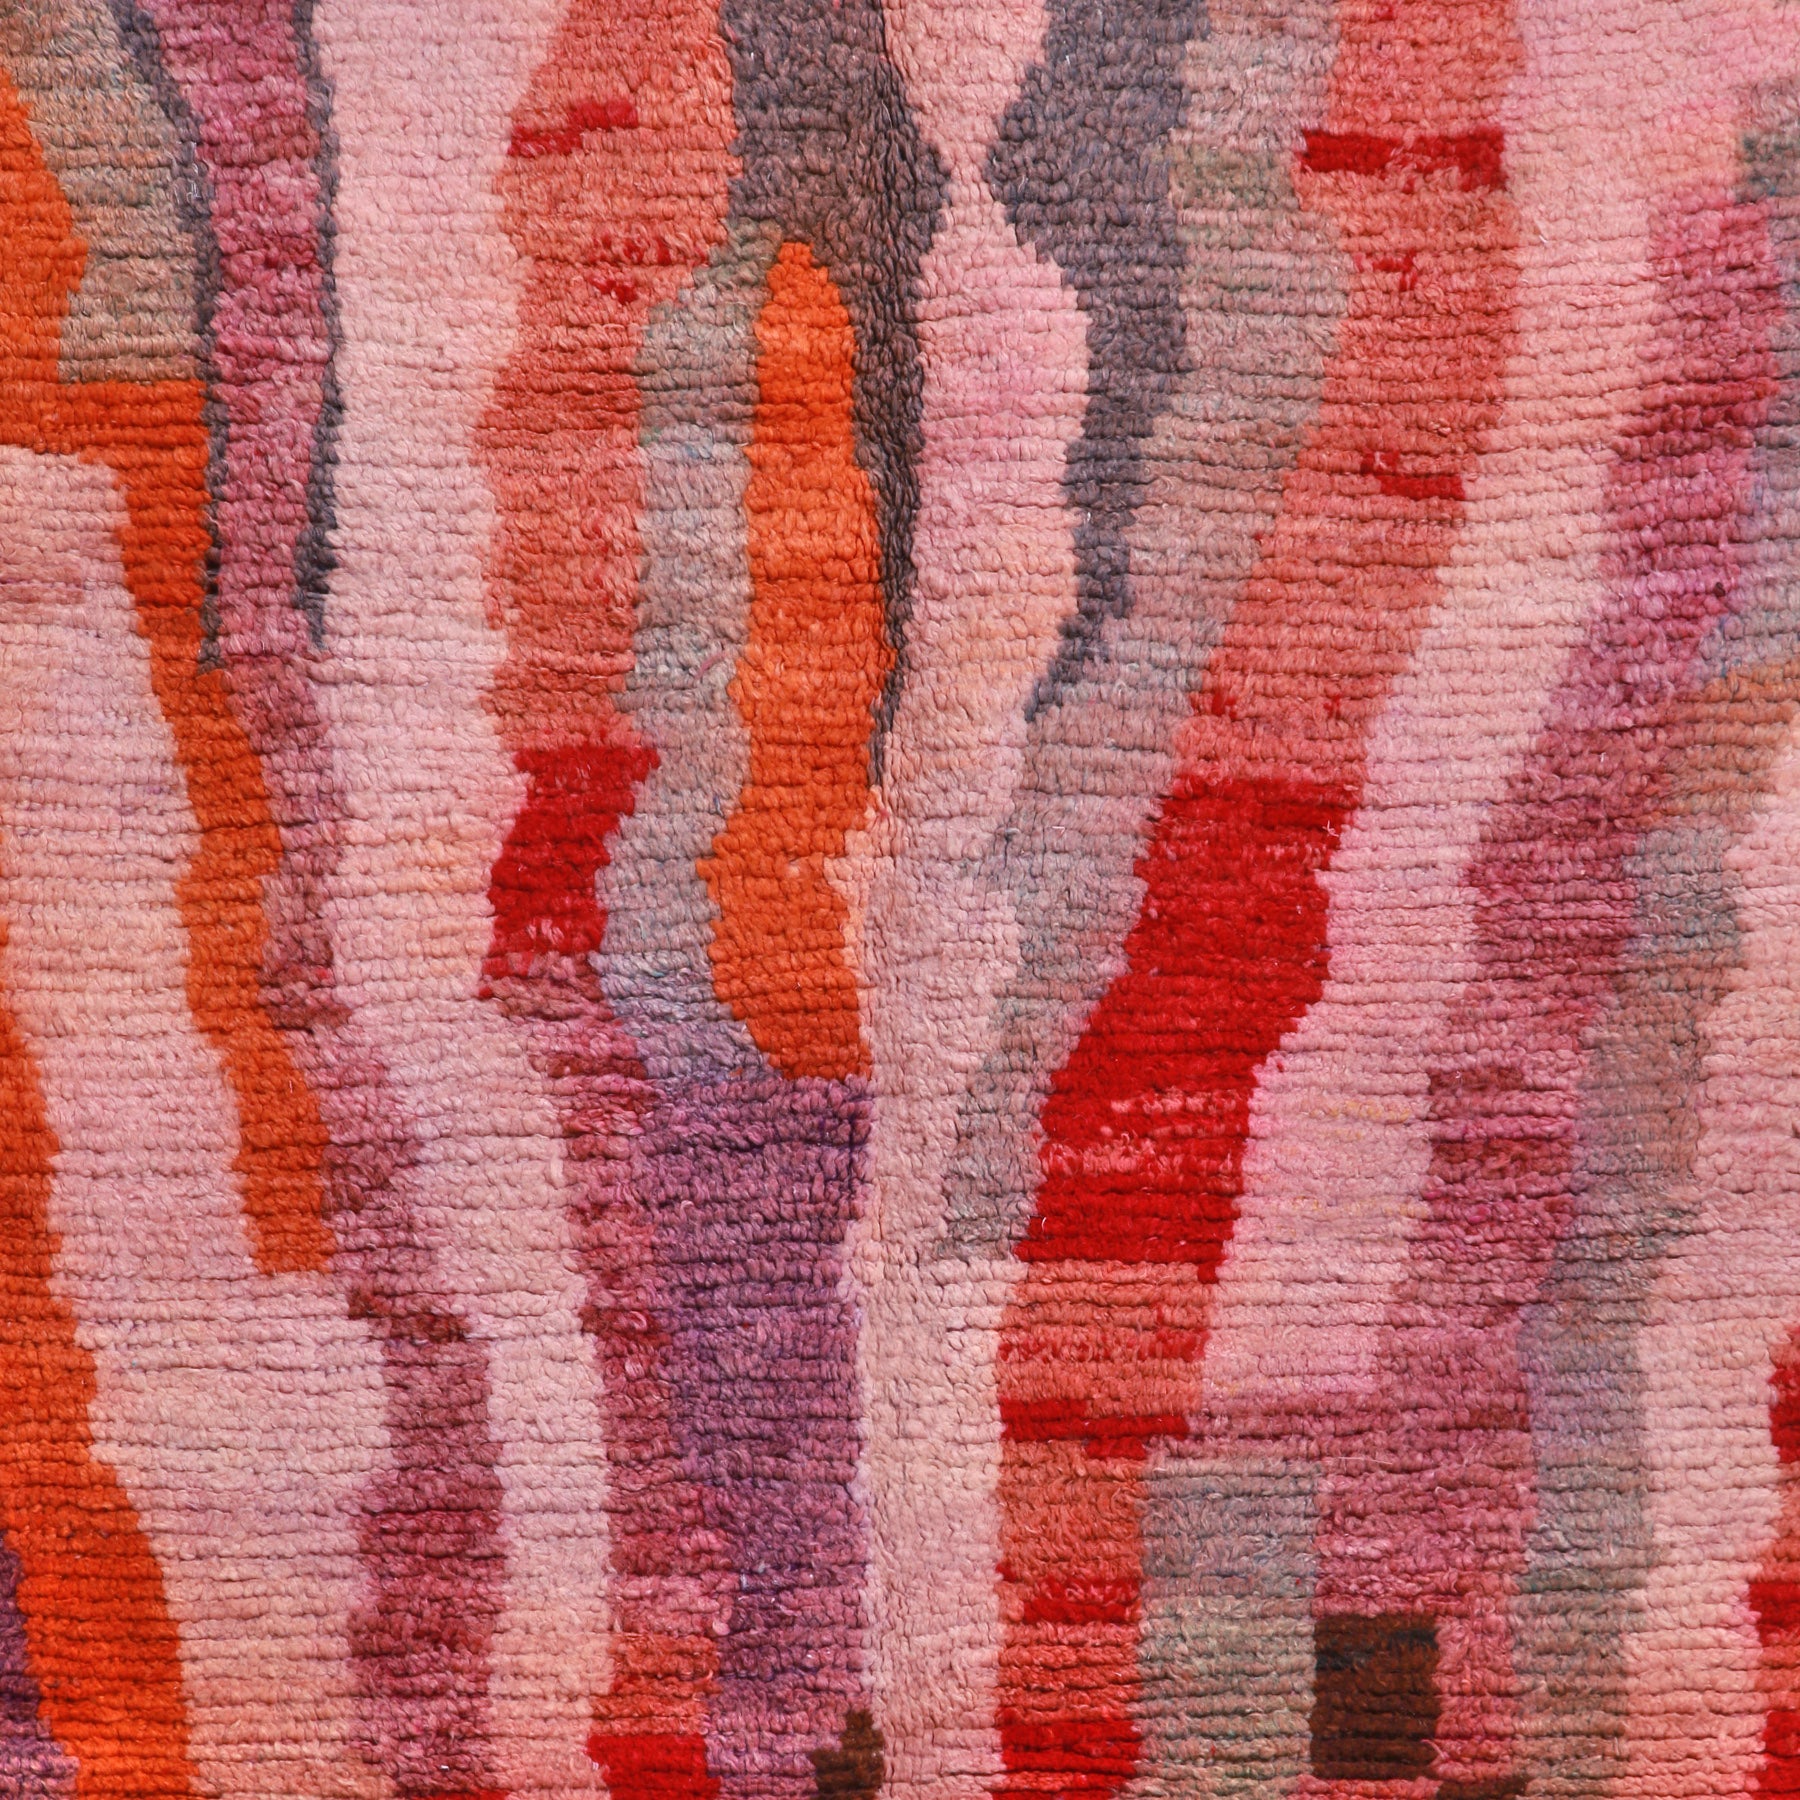 dettaglio della fantiasia di un tappeto boujaad daui colori rosa rosso arancione lilla e grigio